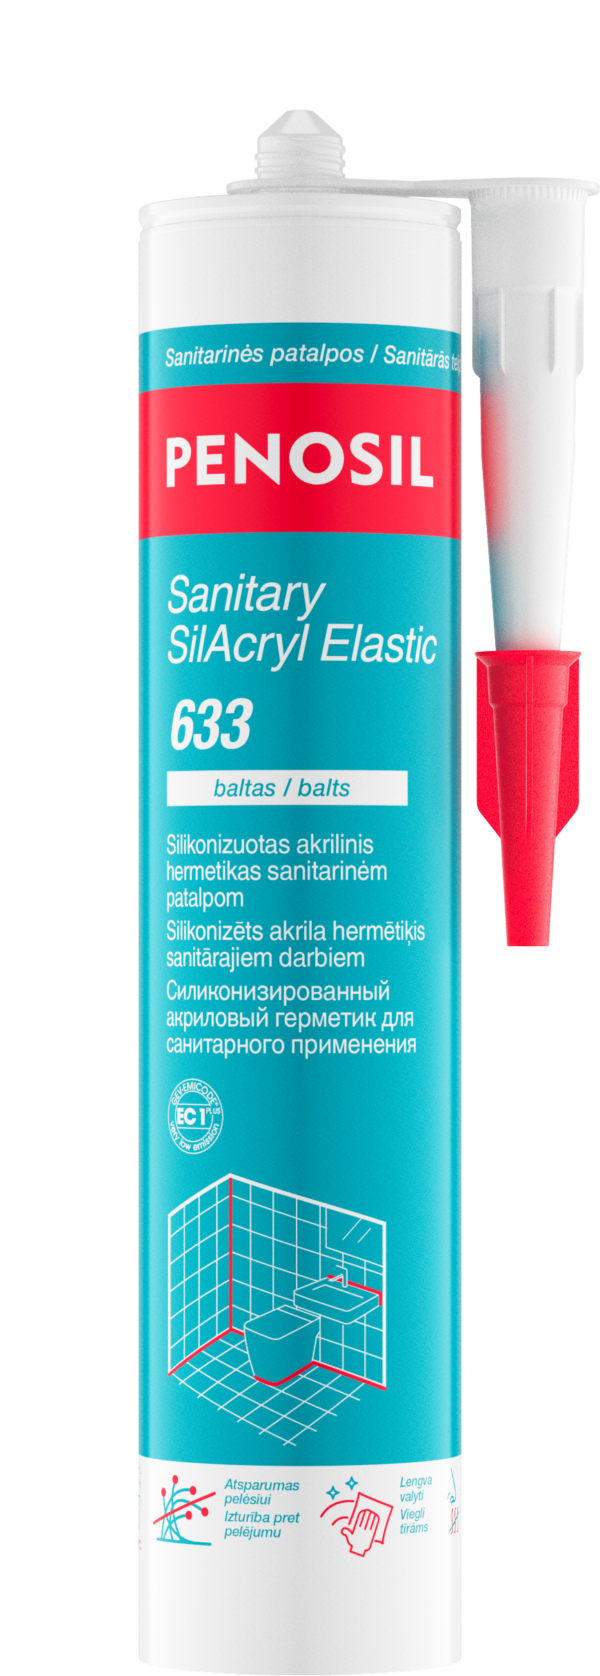 PENOSIL Sanitary SilAcryl Elastic 633 silikonizuotas sanitarinis akrilas